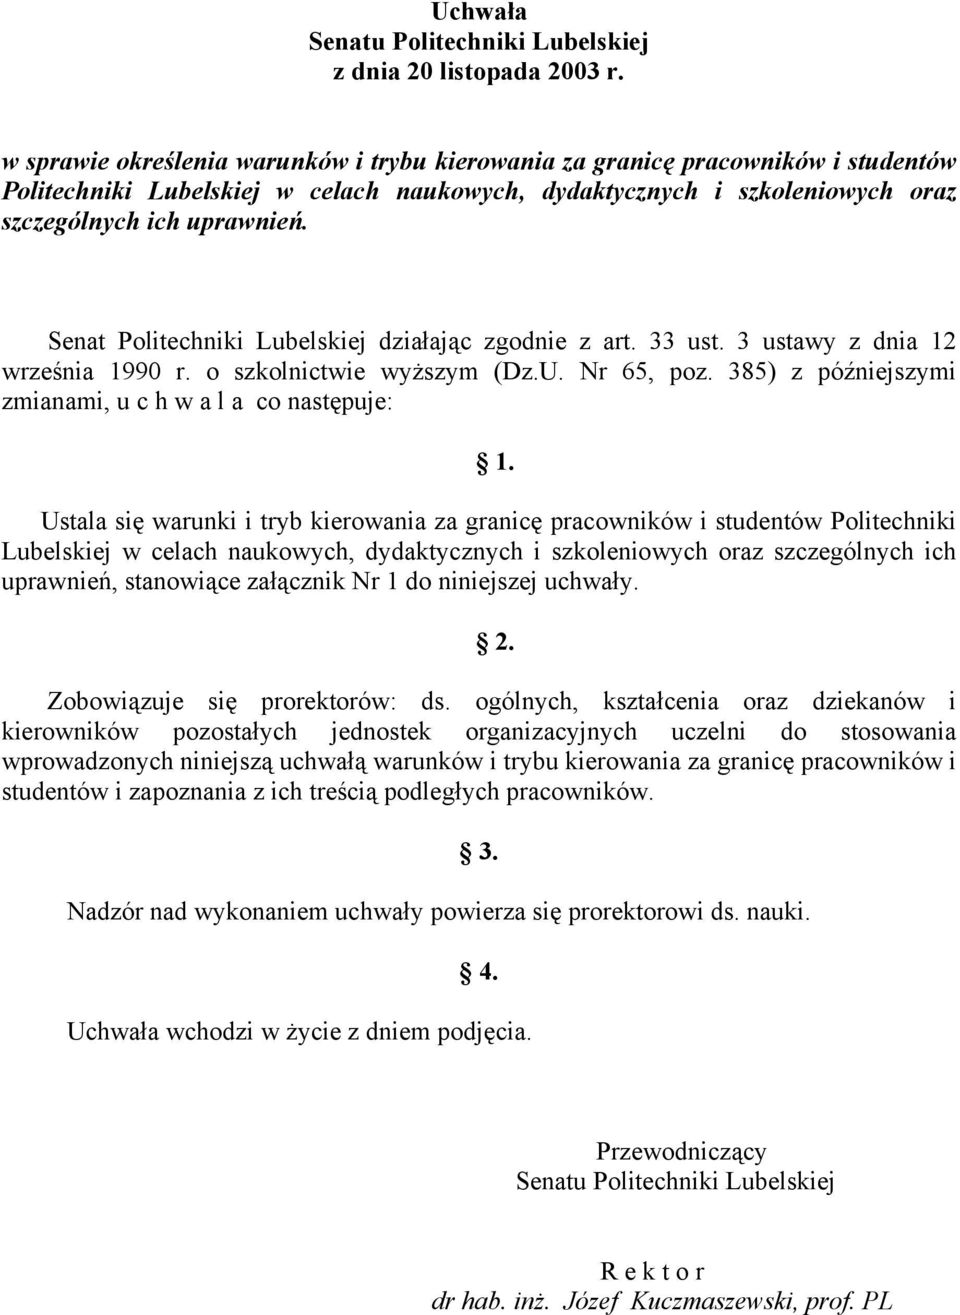 Senat Politechniki Lubelskiej działając zgodnie z art. 33 ust. 3 ustawy z dnia 12 września 1990 r. o szkolnictwie wyższym (Dz.U. Nr 65, poz.